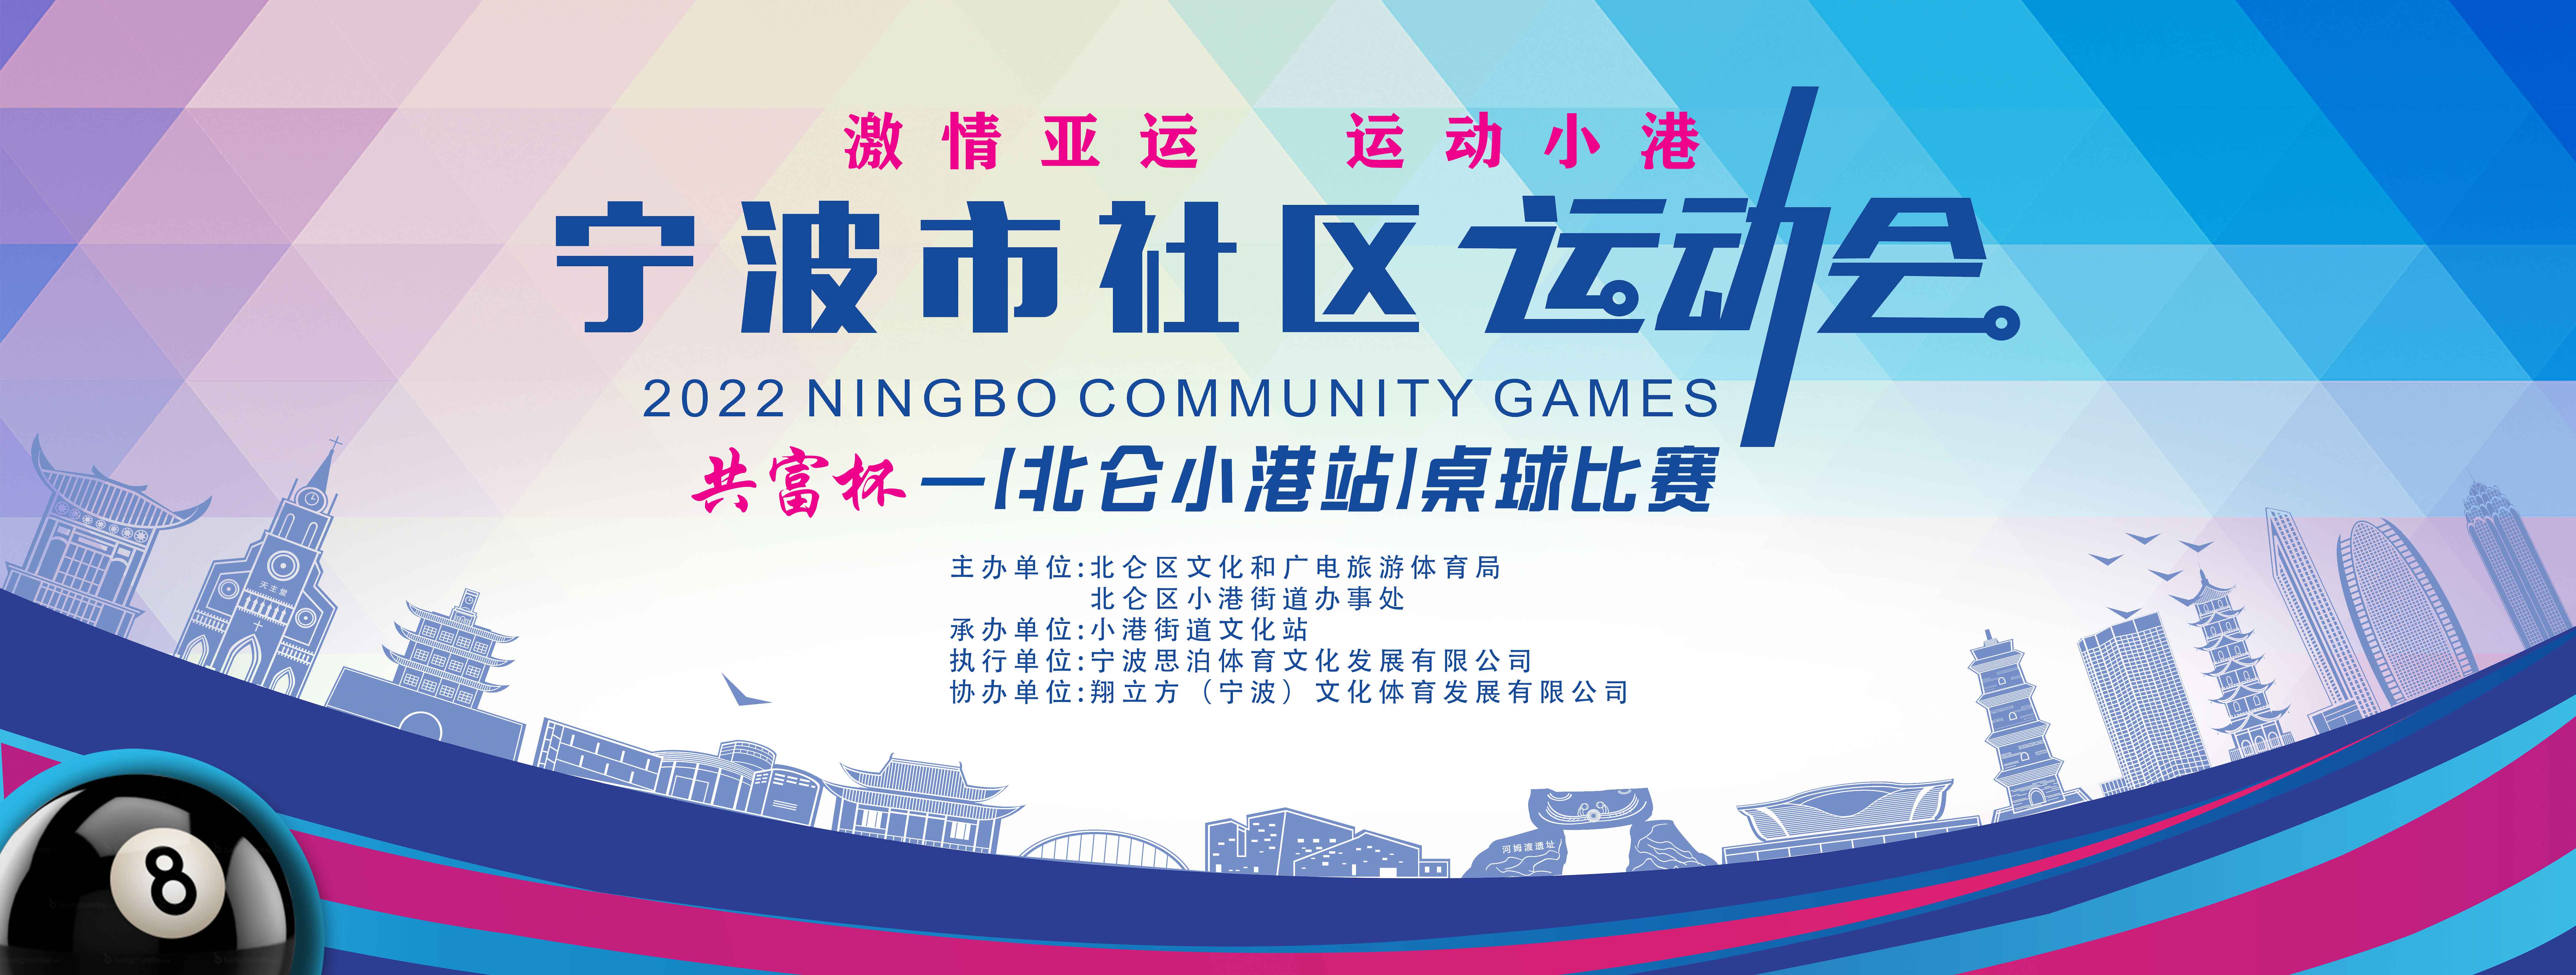 宁波市社区运动会共富杯桌球比赛